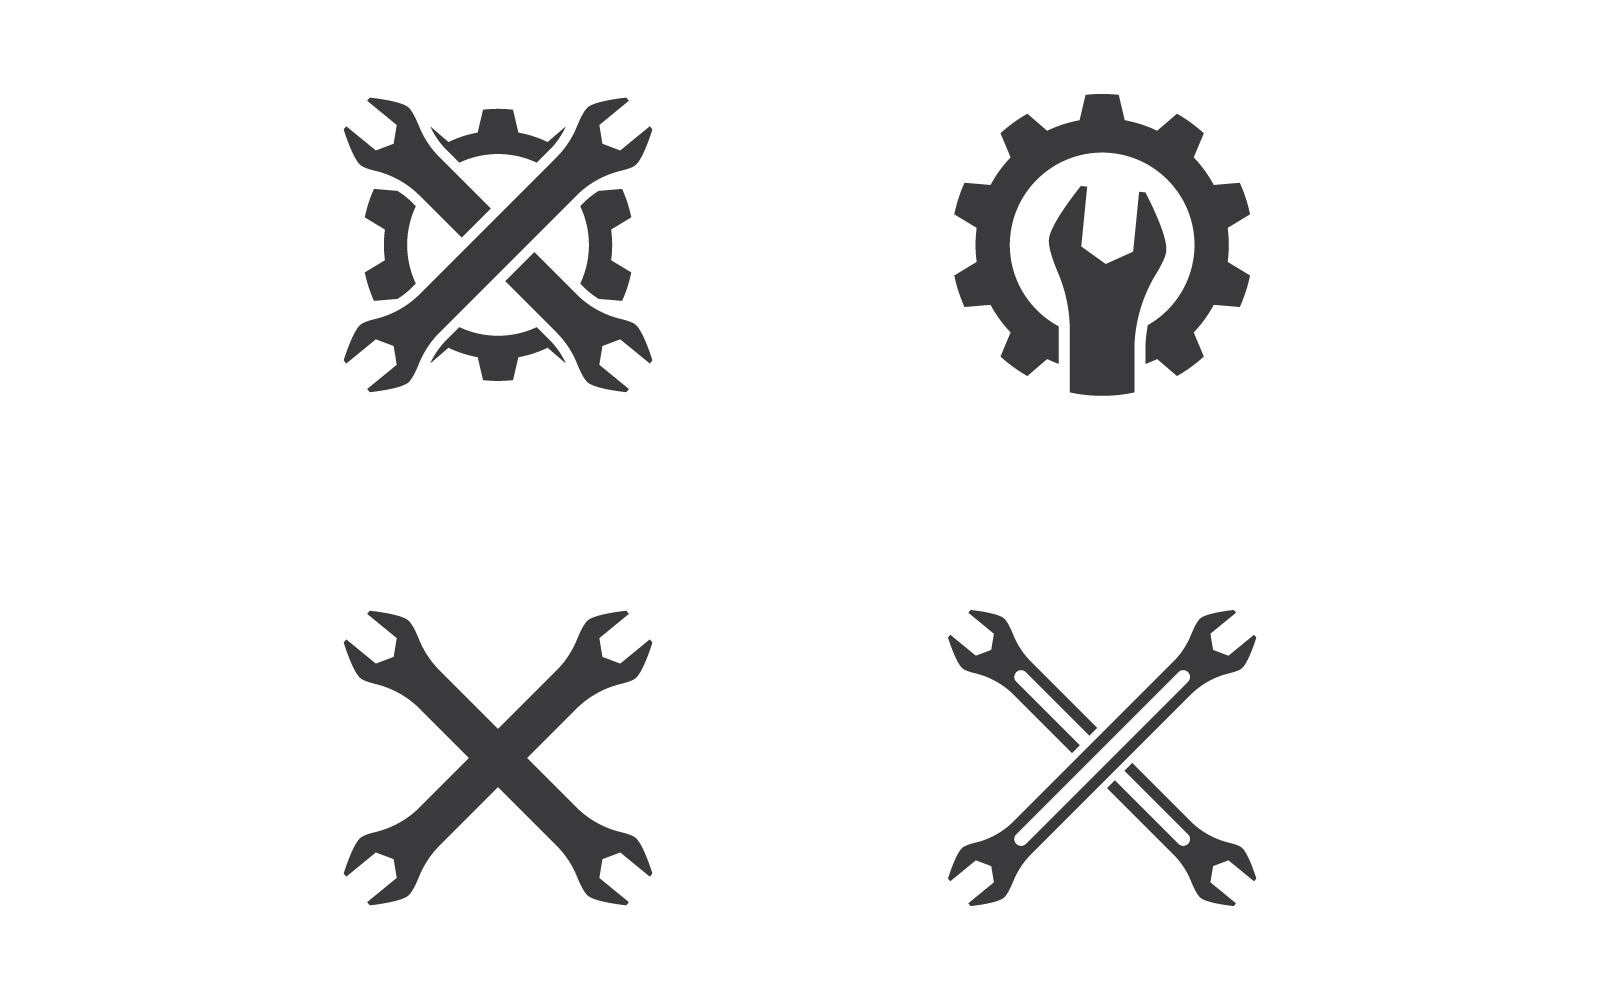 Disegno dell'icona vettoriale del logo della chiave inglese